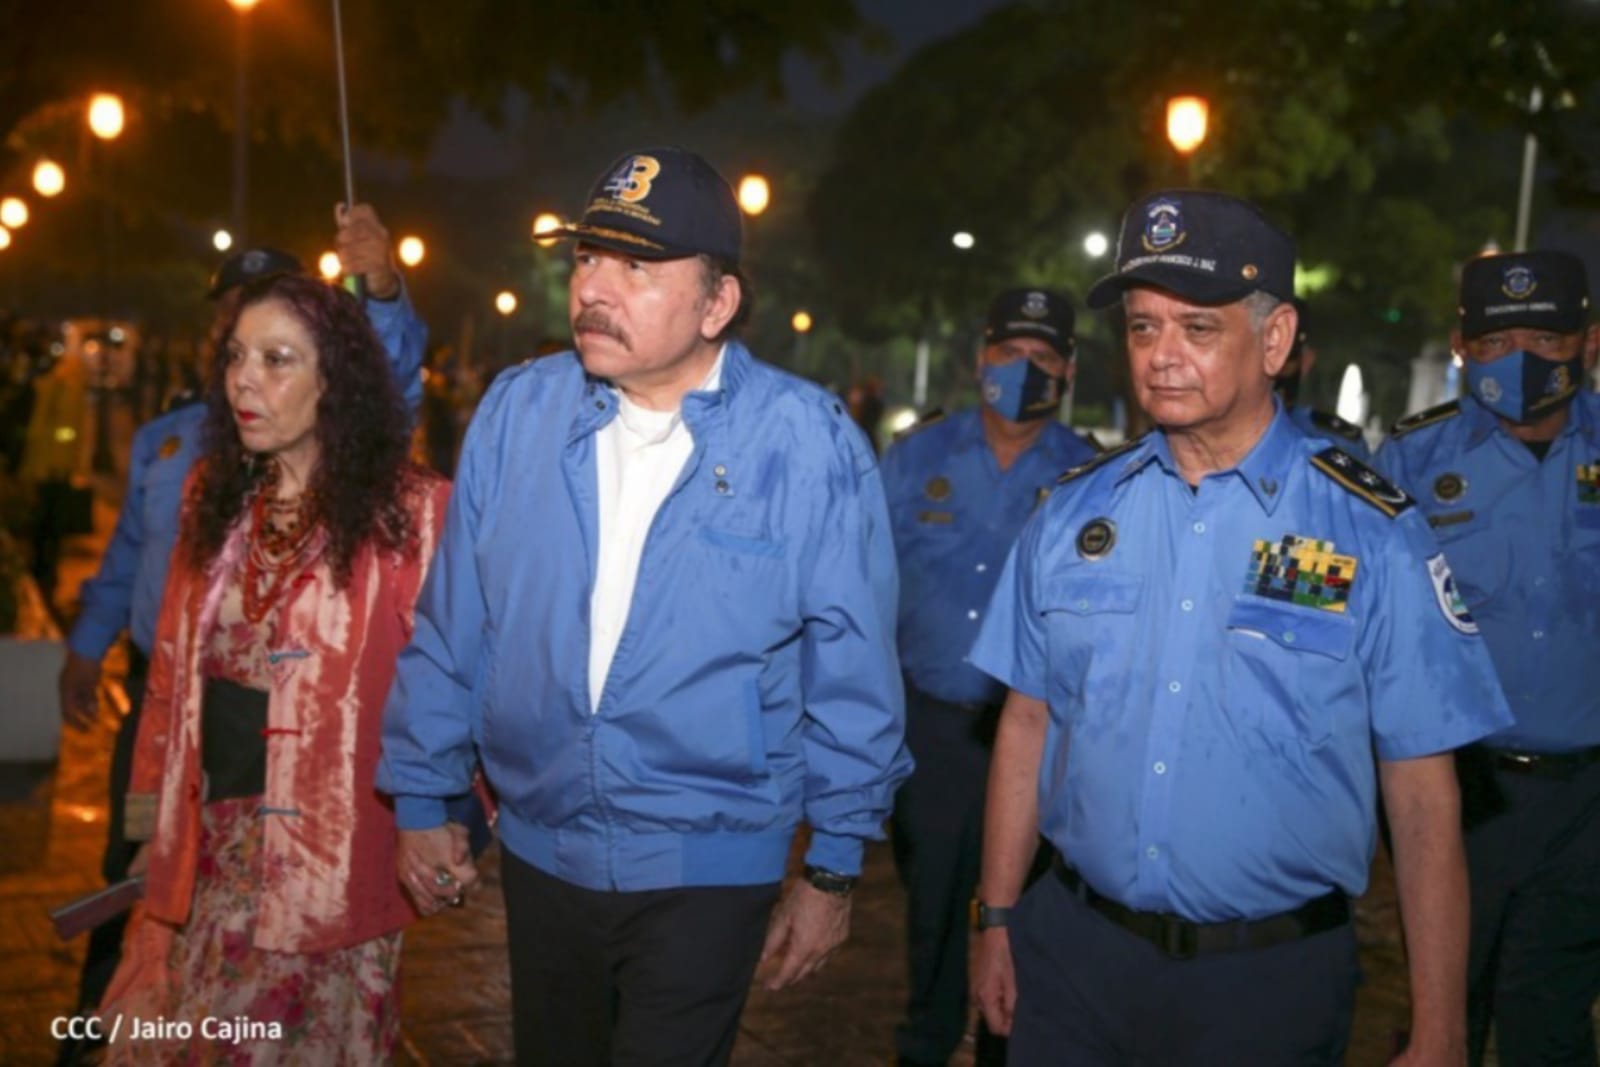 cpdh preocupada por más poder de la Policia de nicaragua